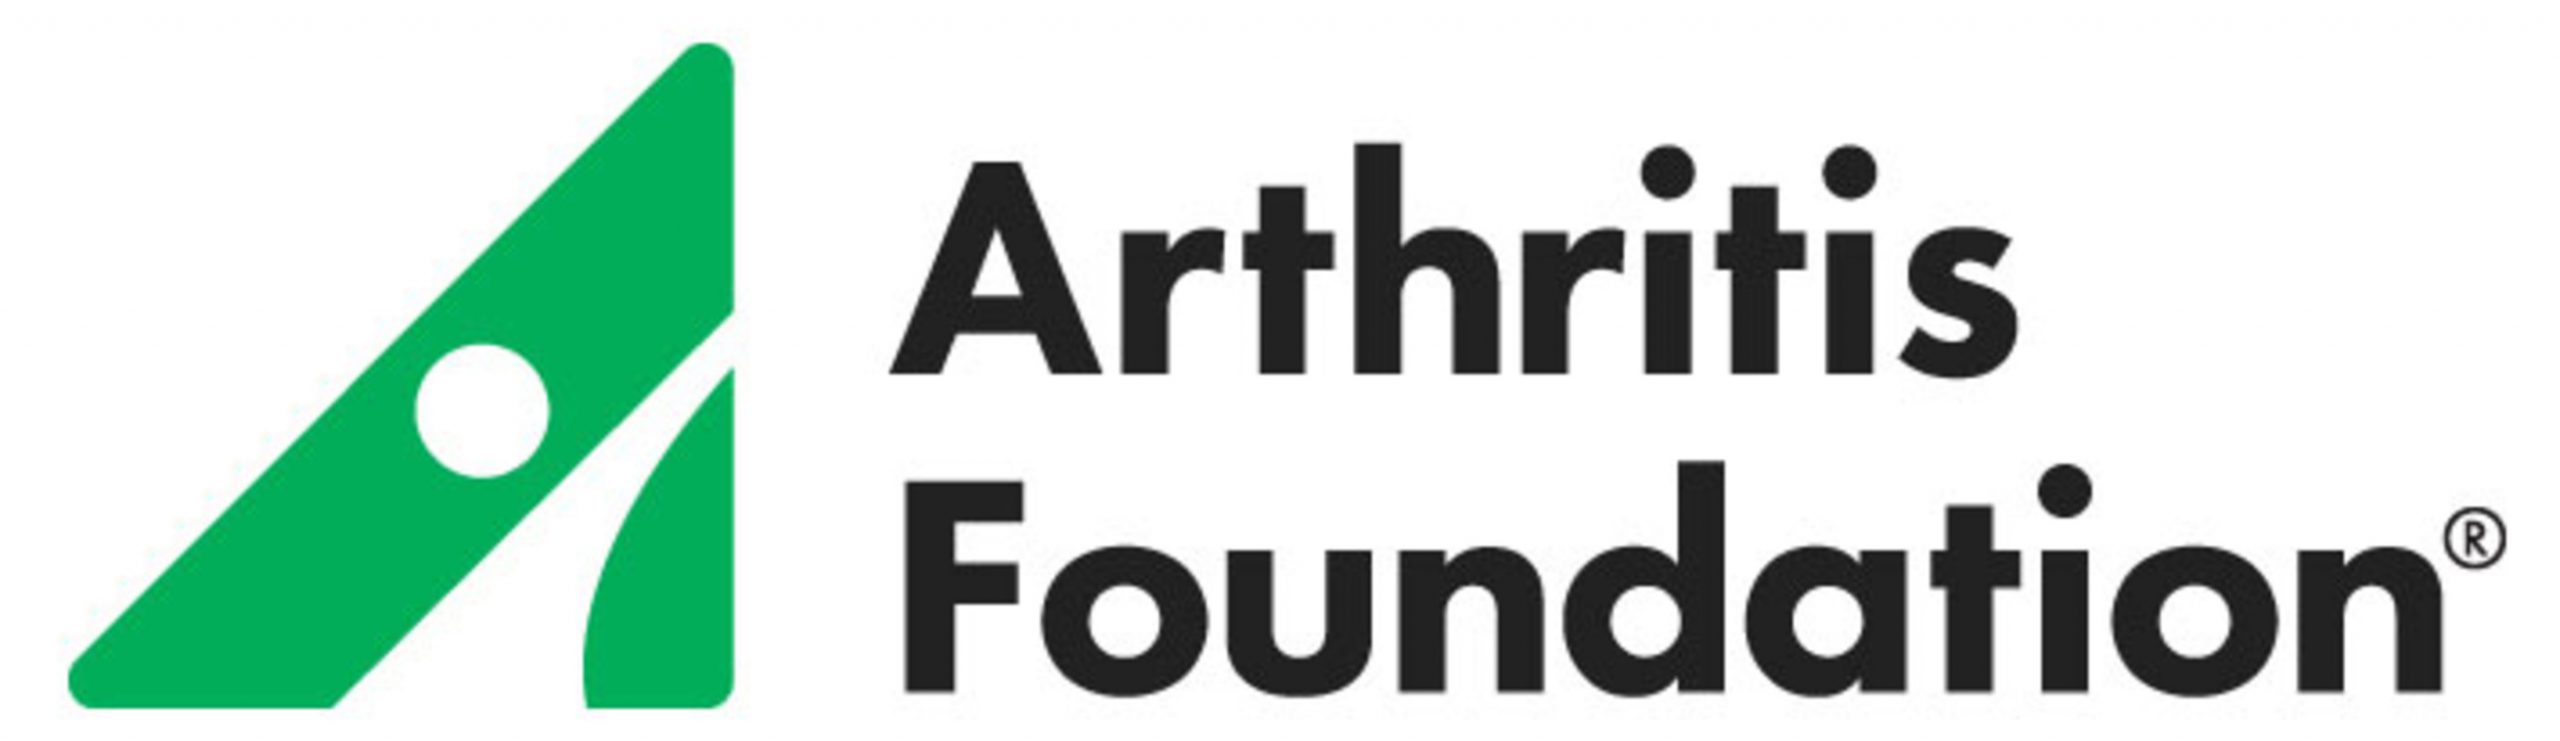 Arthritis-Foundation-Logo-scaled